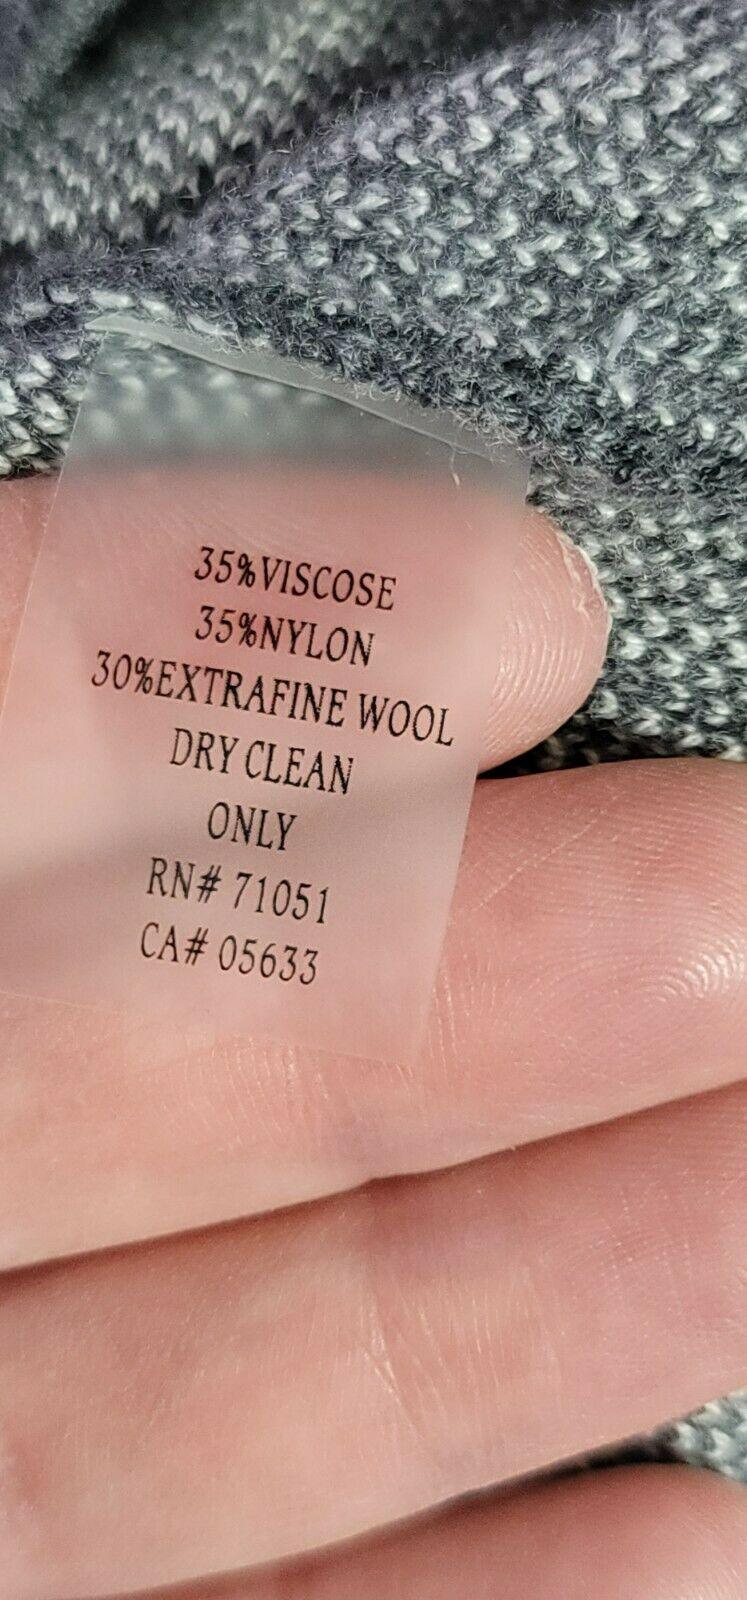 Stone&Sky Knit Wool Blend Striped Gray Asymmetrical Dress Size M - SVNYFancy